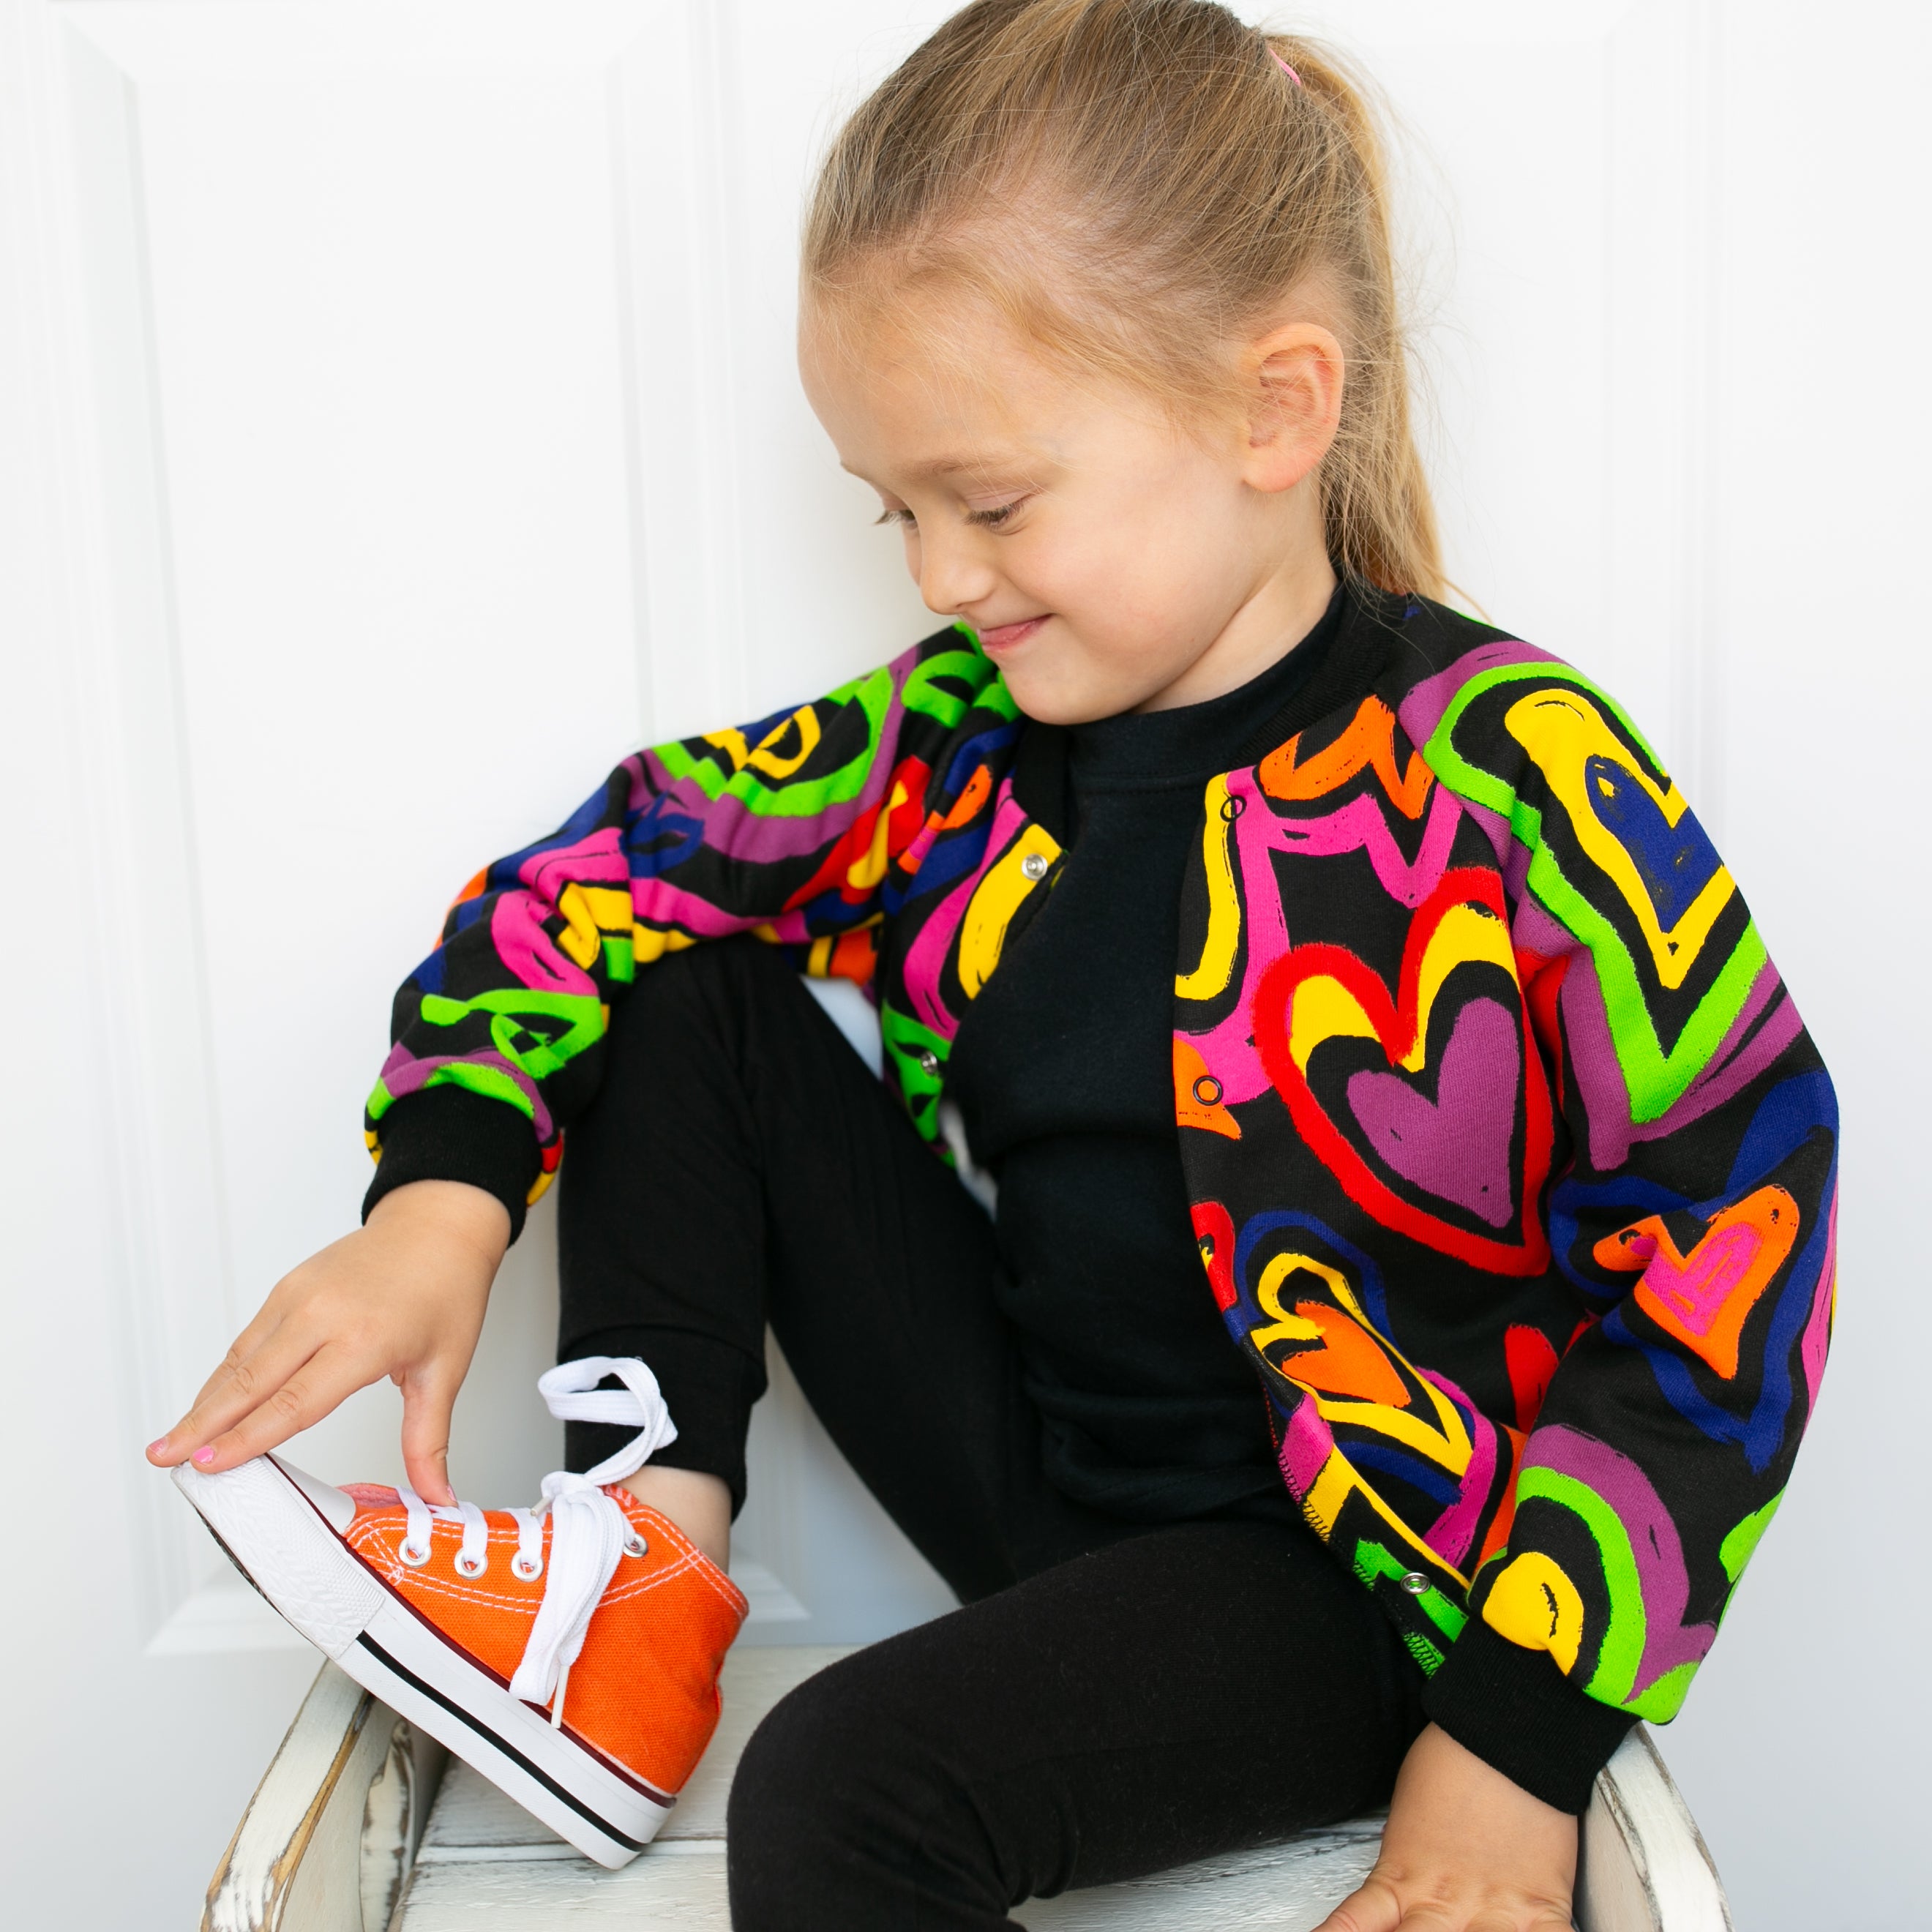 Toddler Girls Long Sleeve Rainbow Heart Print Puffer Jacket